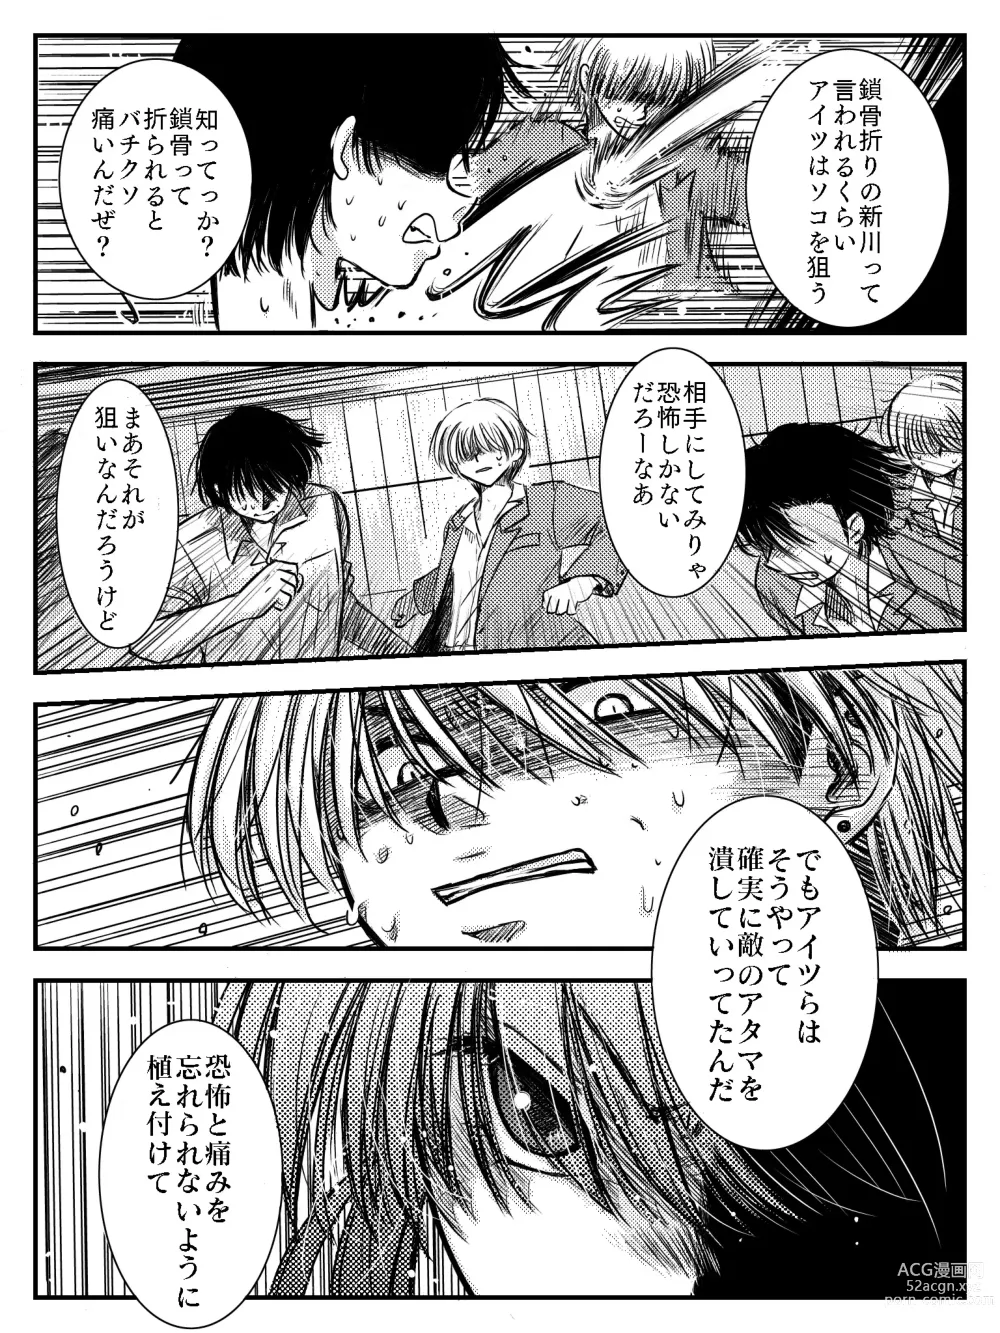 Page 85 of doujinshi LADIES NAVIGATION Episode 4